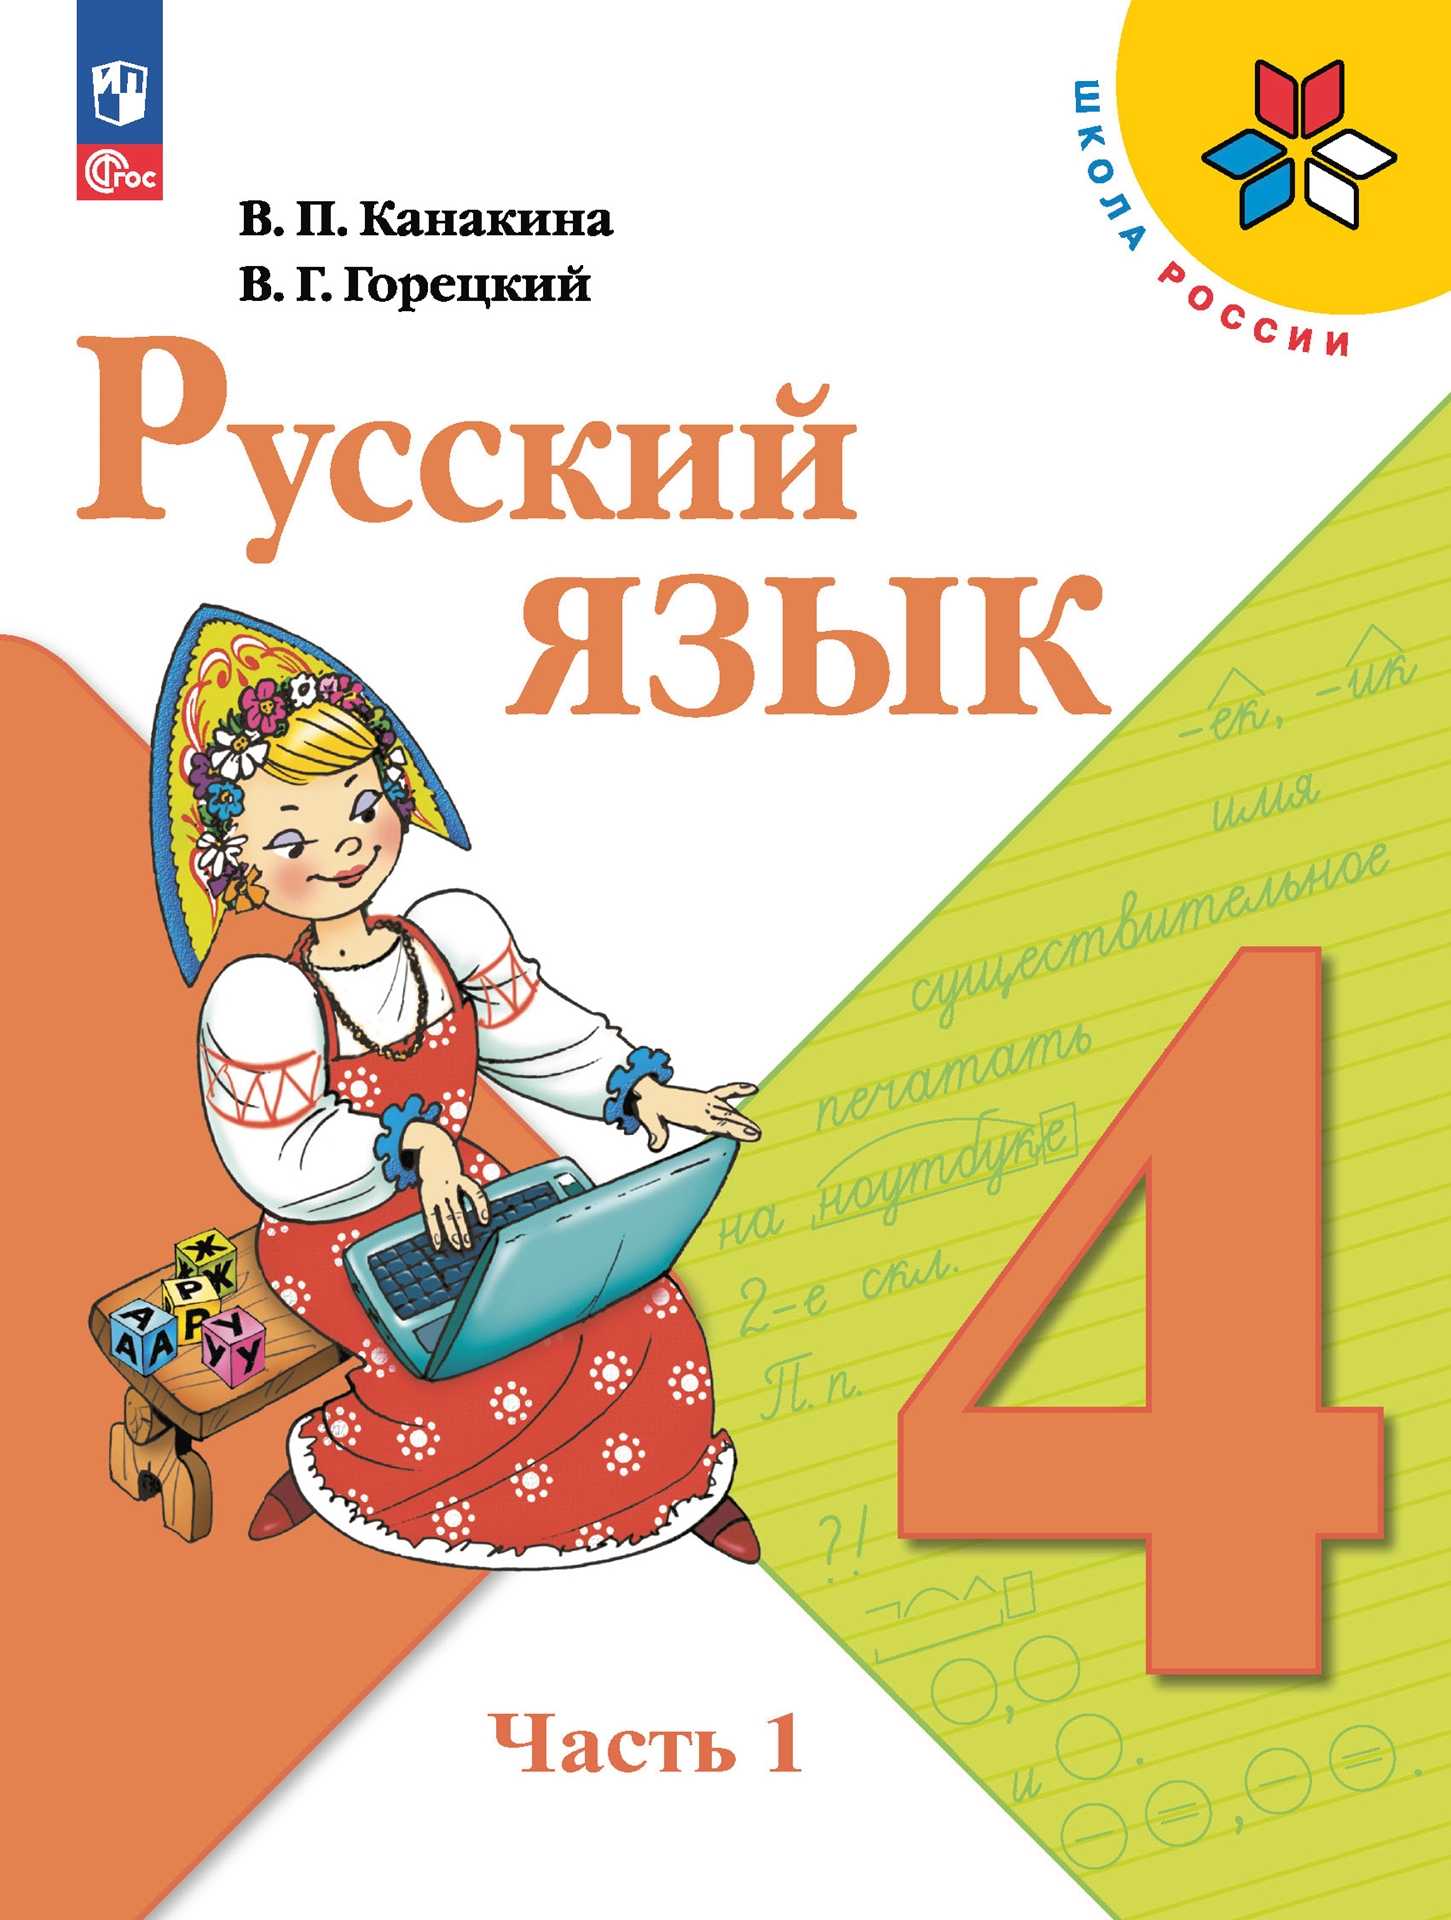 Домашка по русскому языку 3. вместе с этим также читают